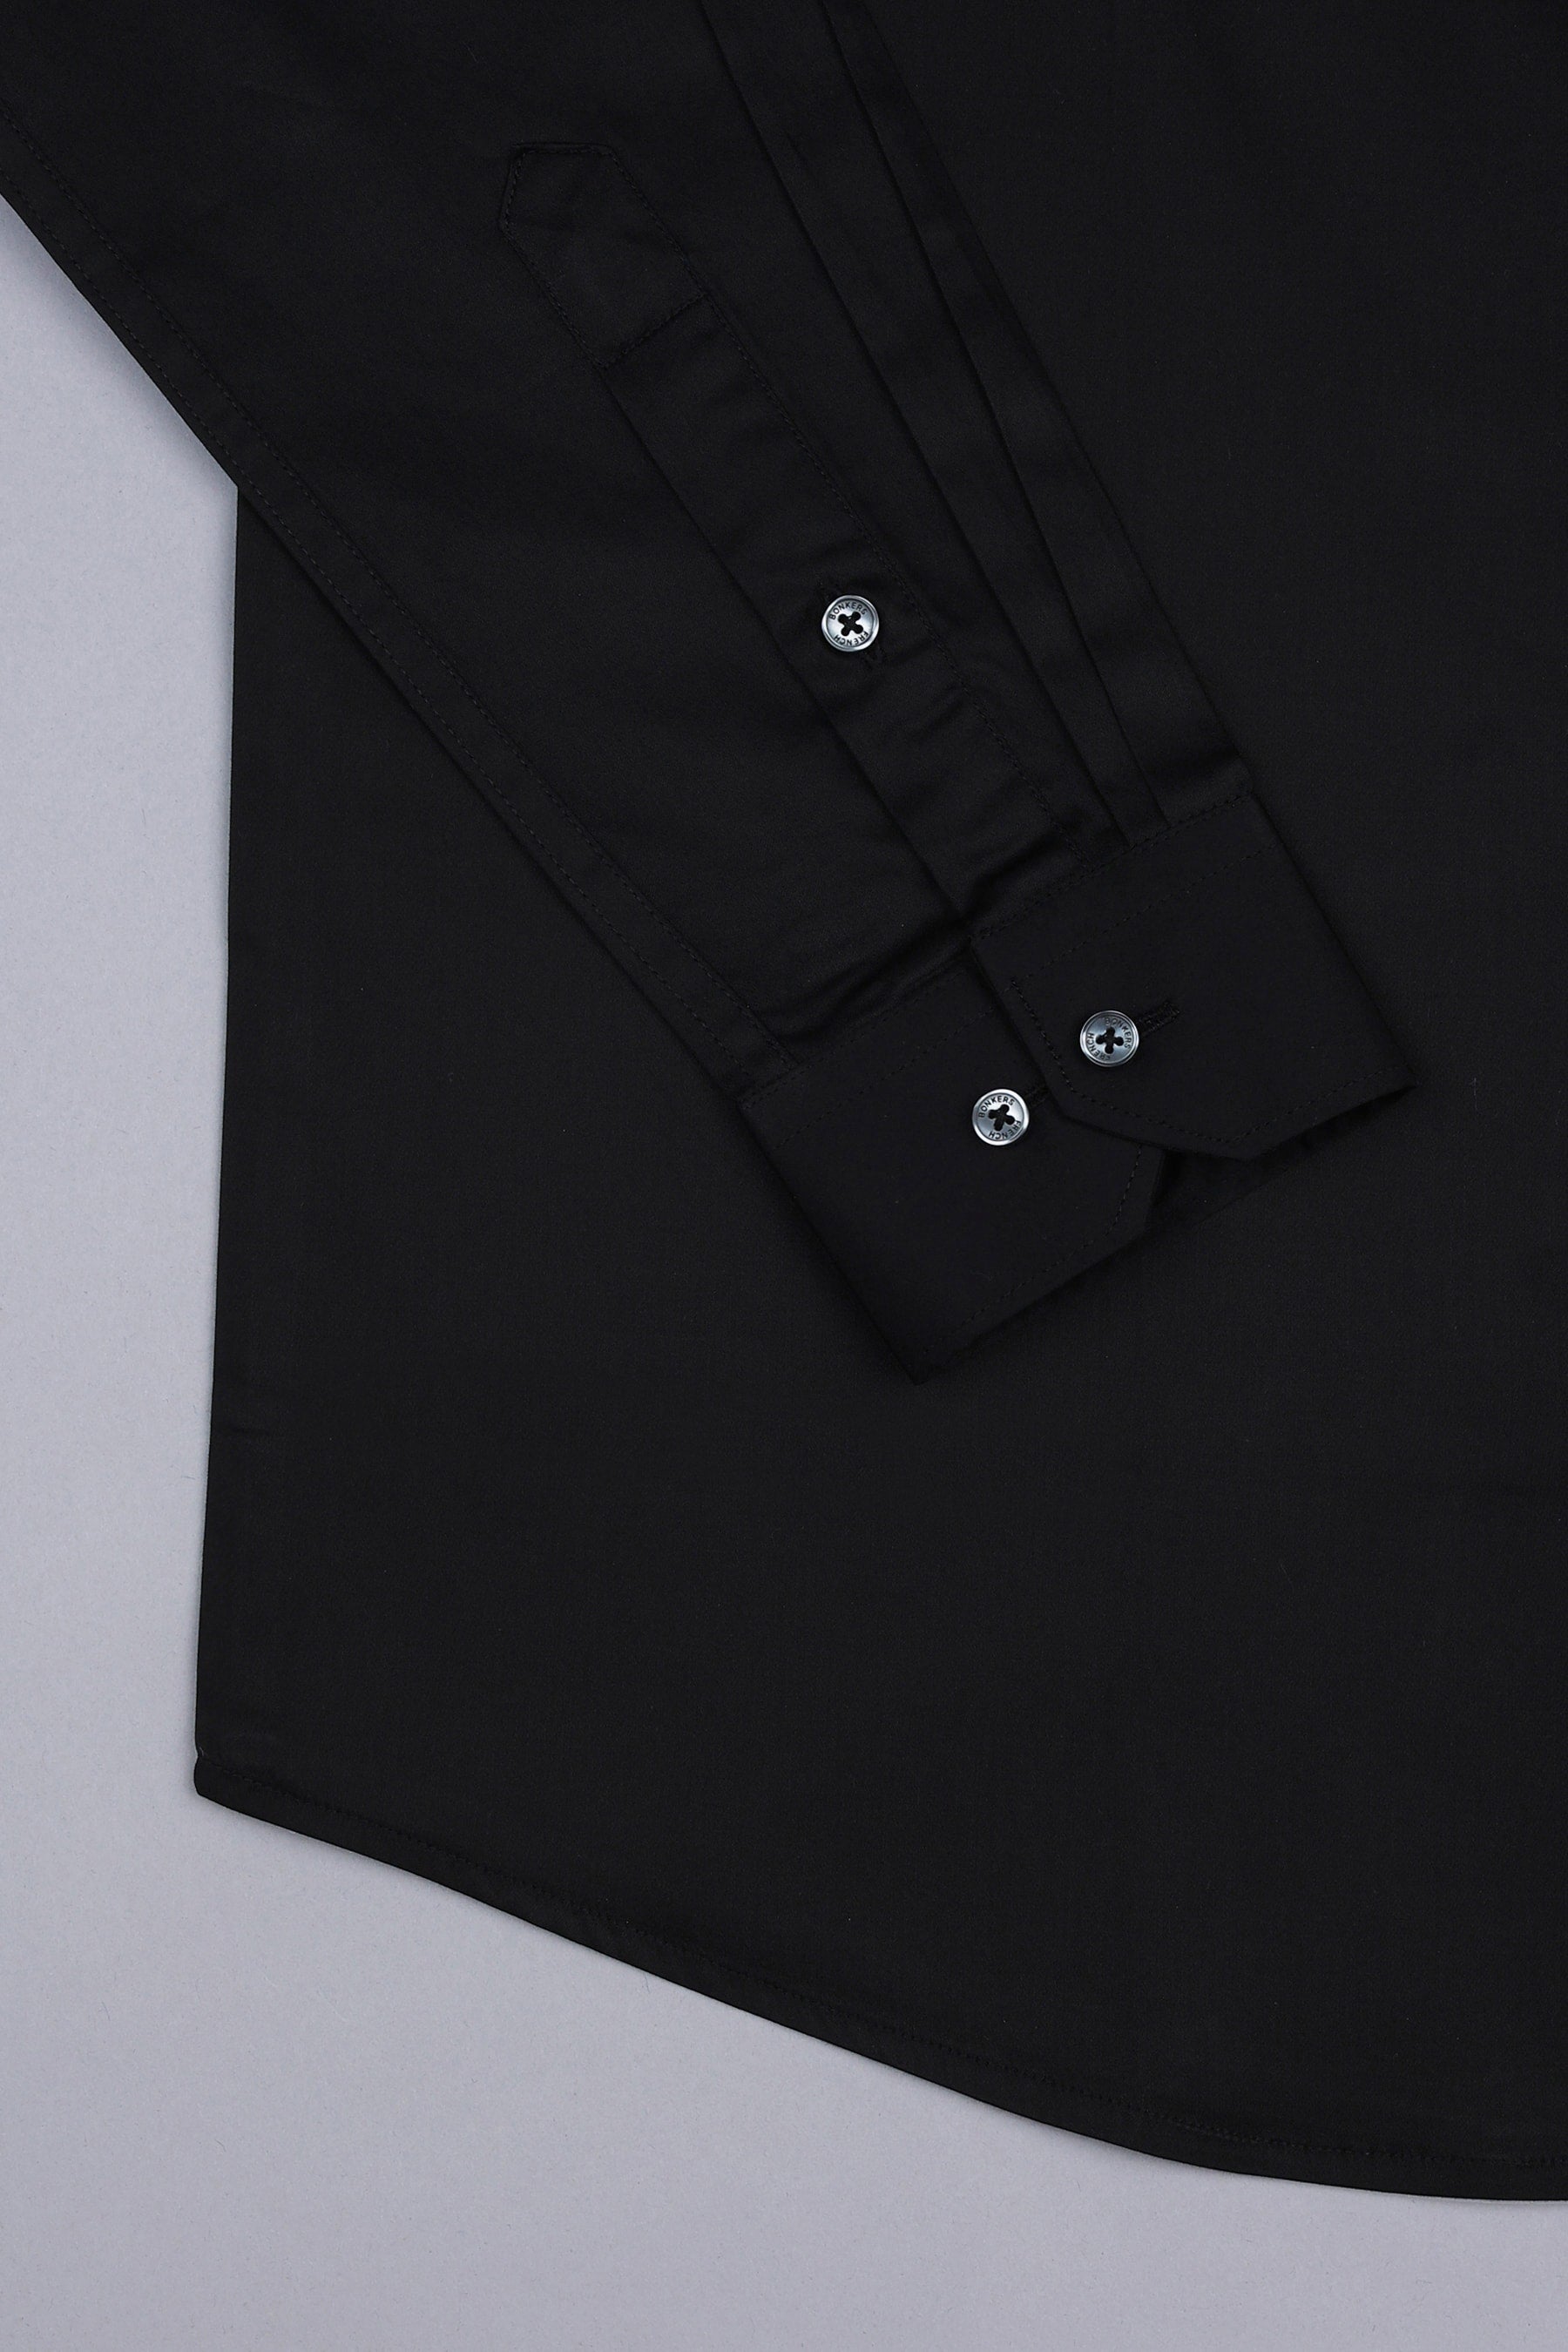 Coal black cotton satin shirt